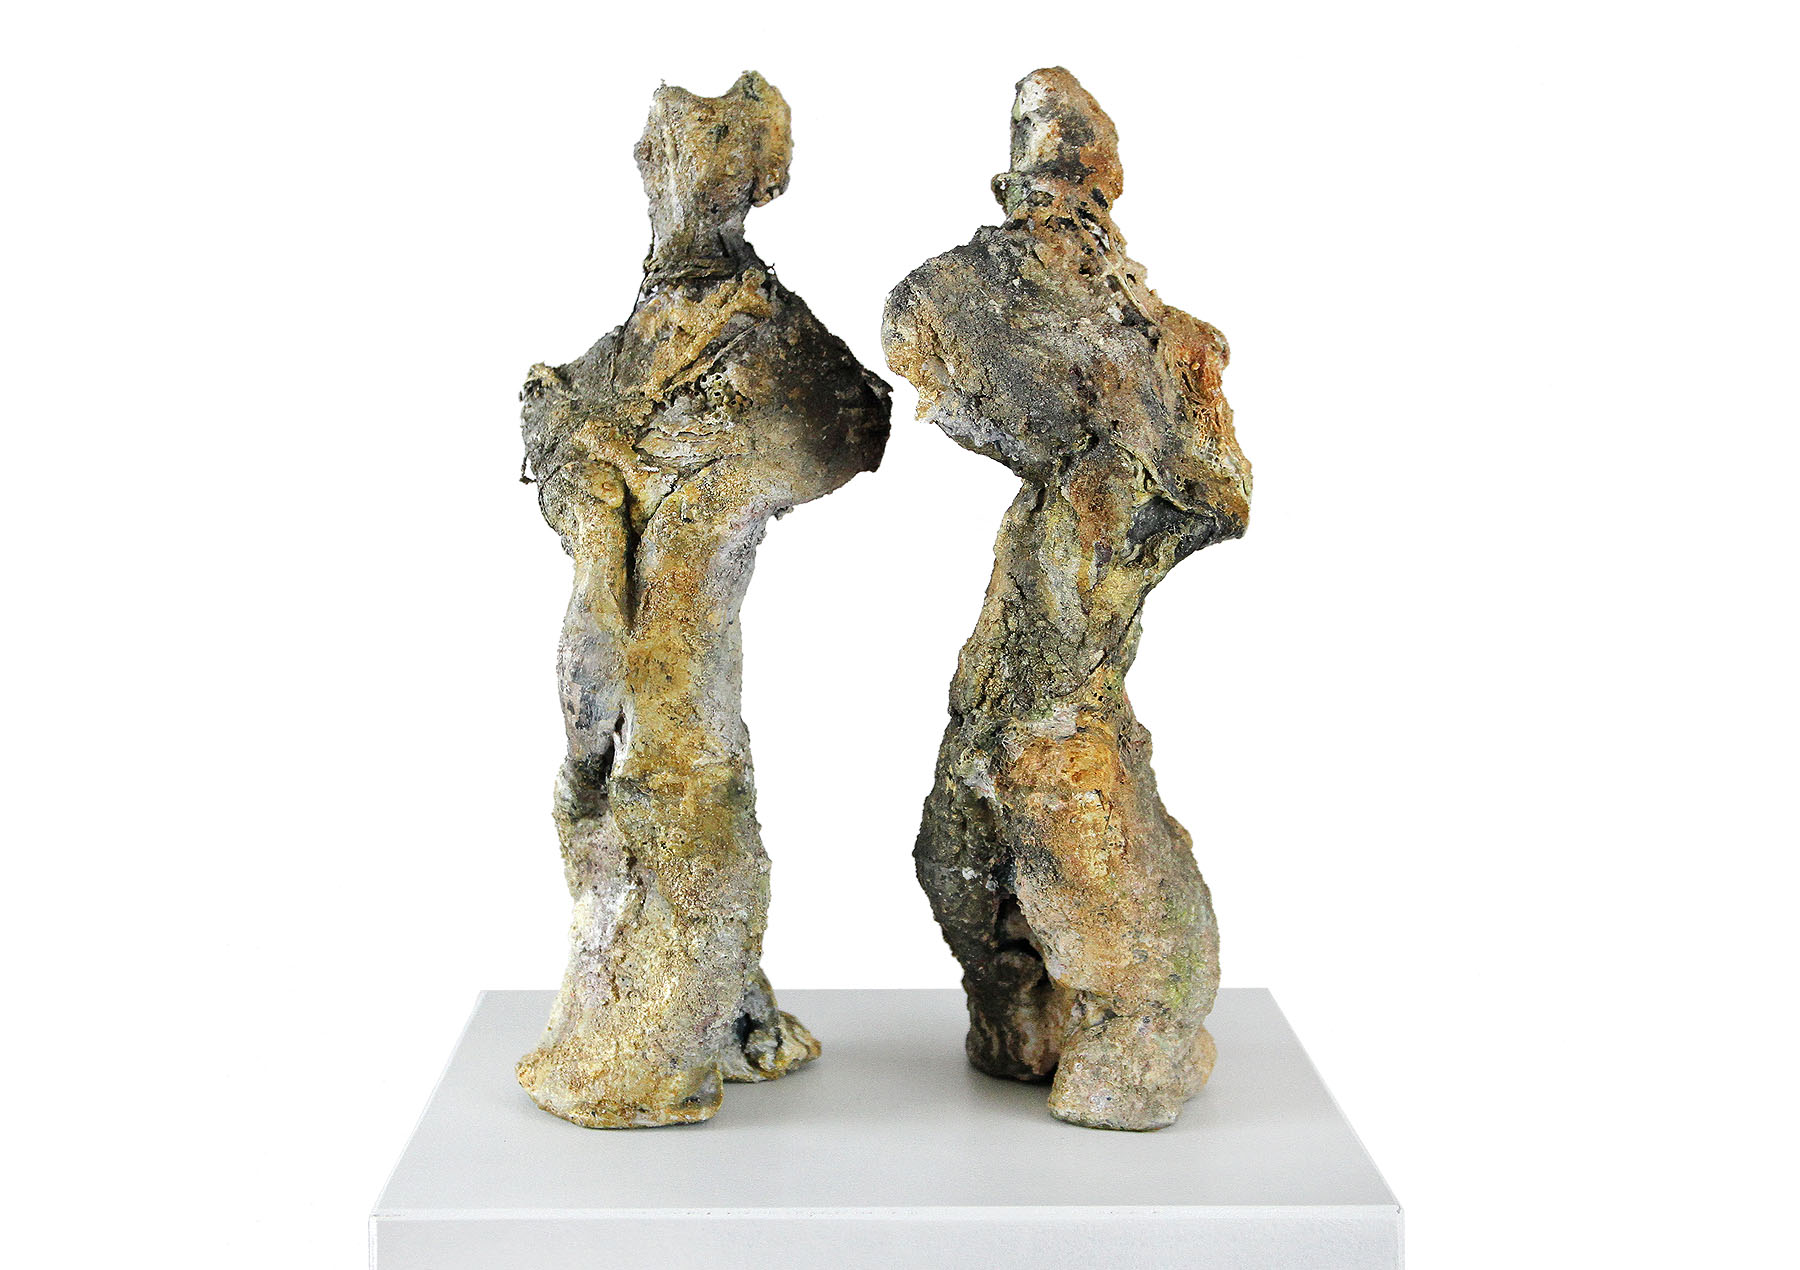 Zeitgenössische Skulptur, Ilona Schmidt: "Der Tanz"